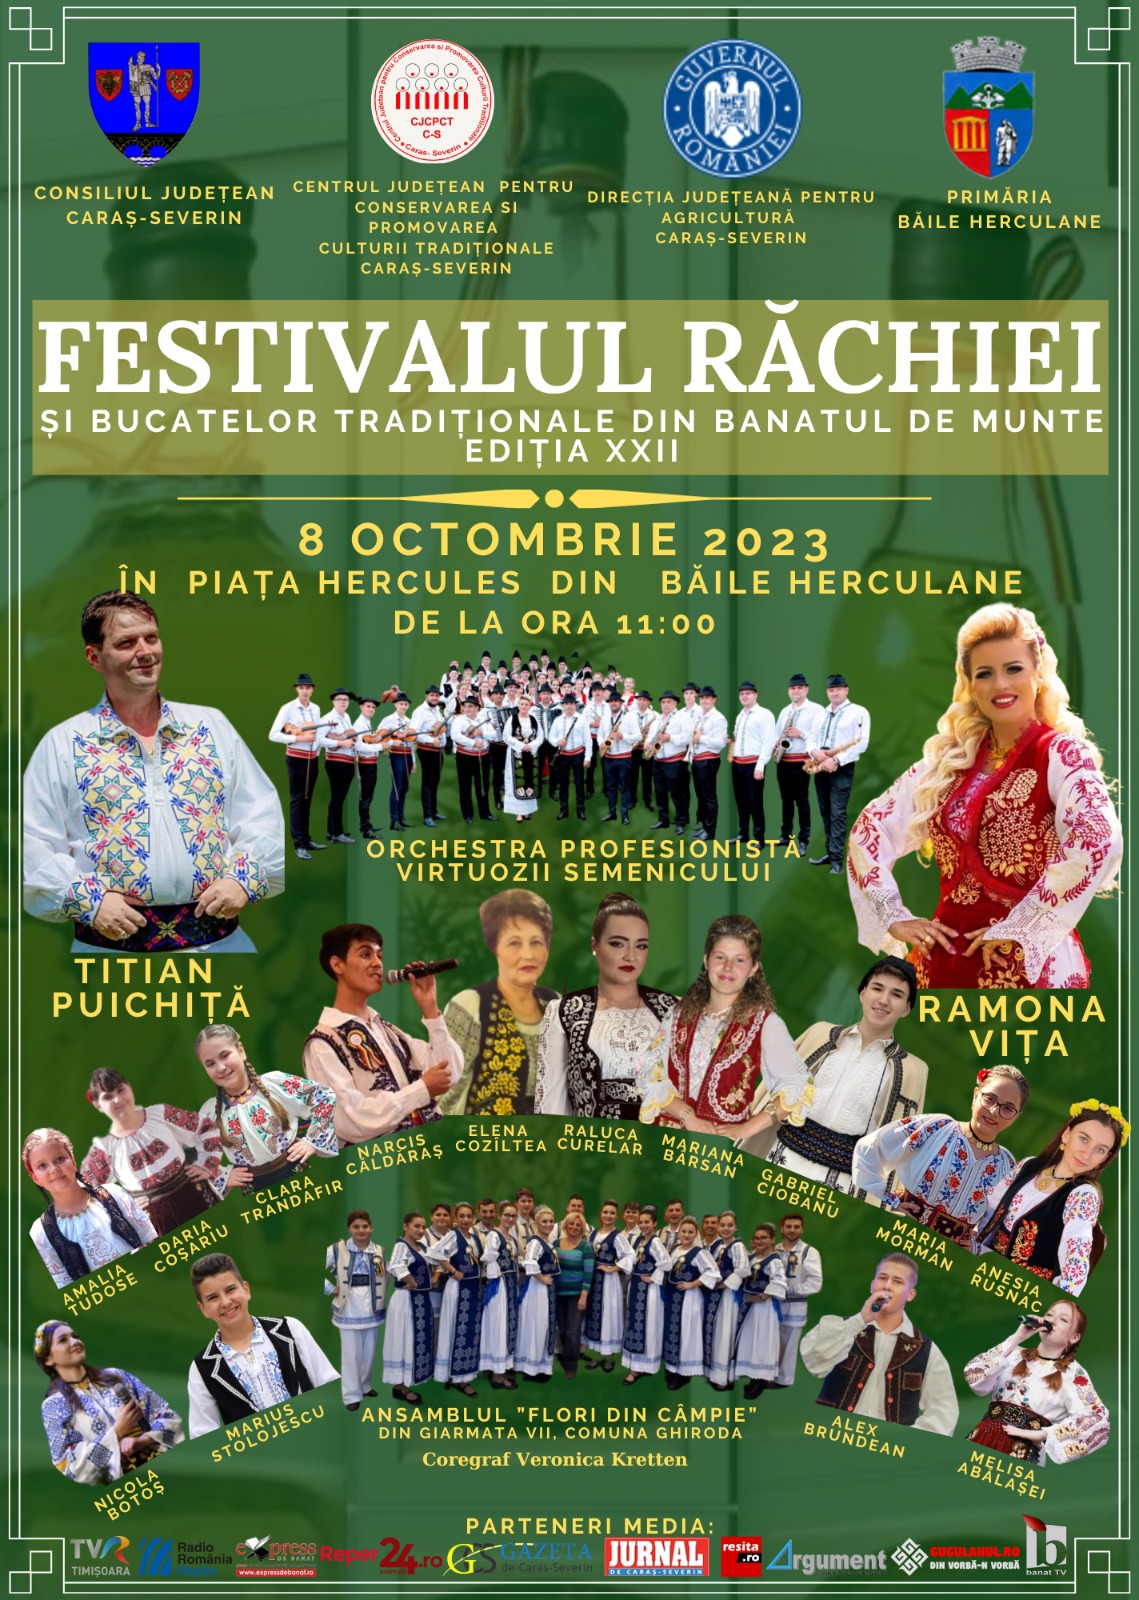 Festivalul Răchiei, o tradiție de 22 de ani la Băile Herculane